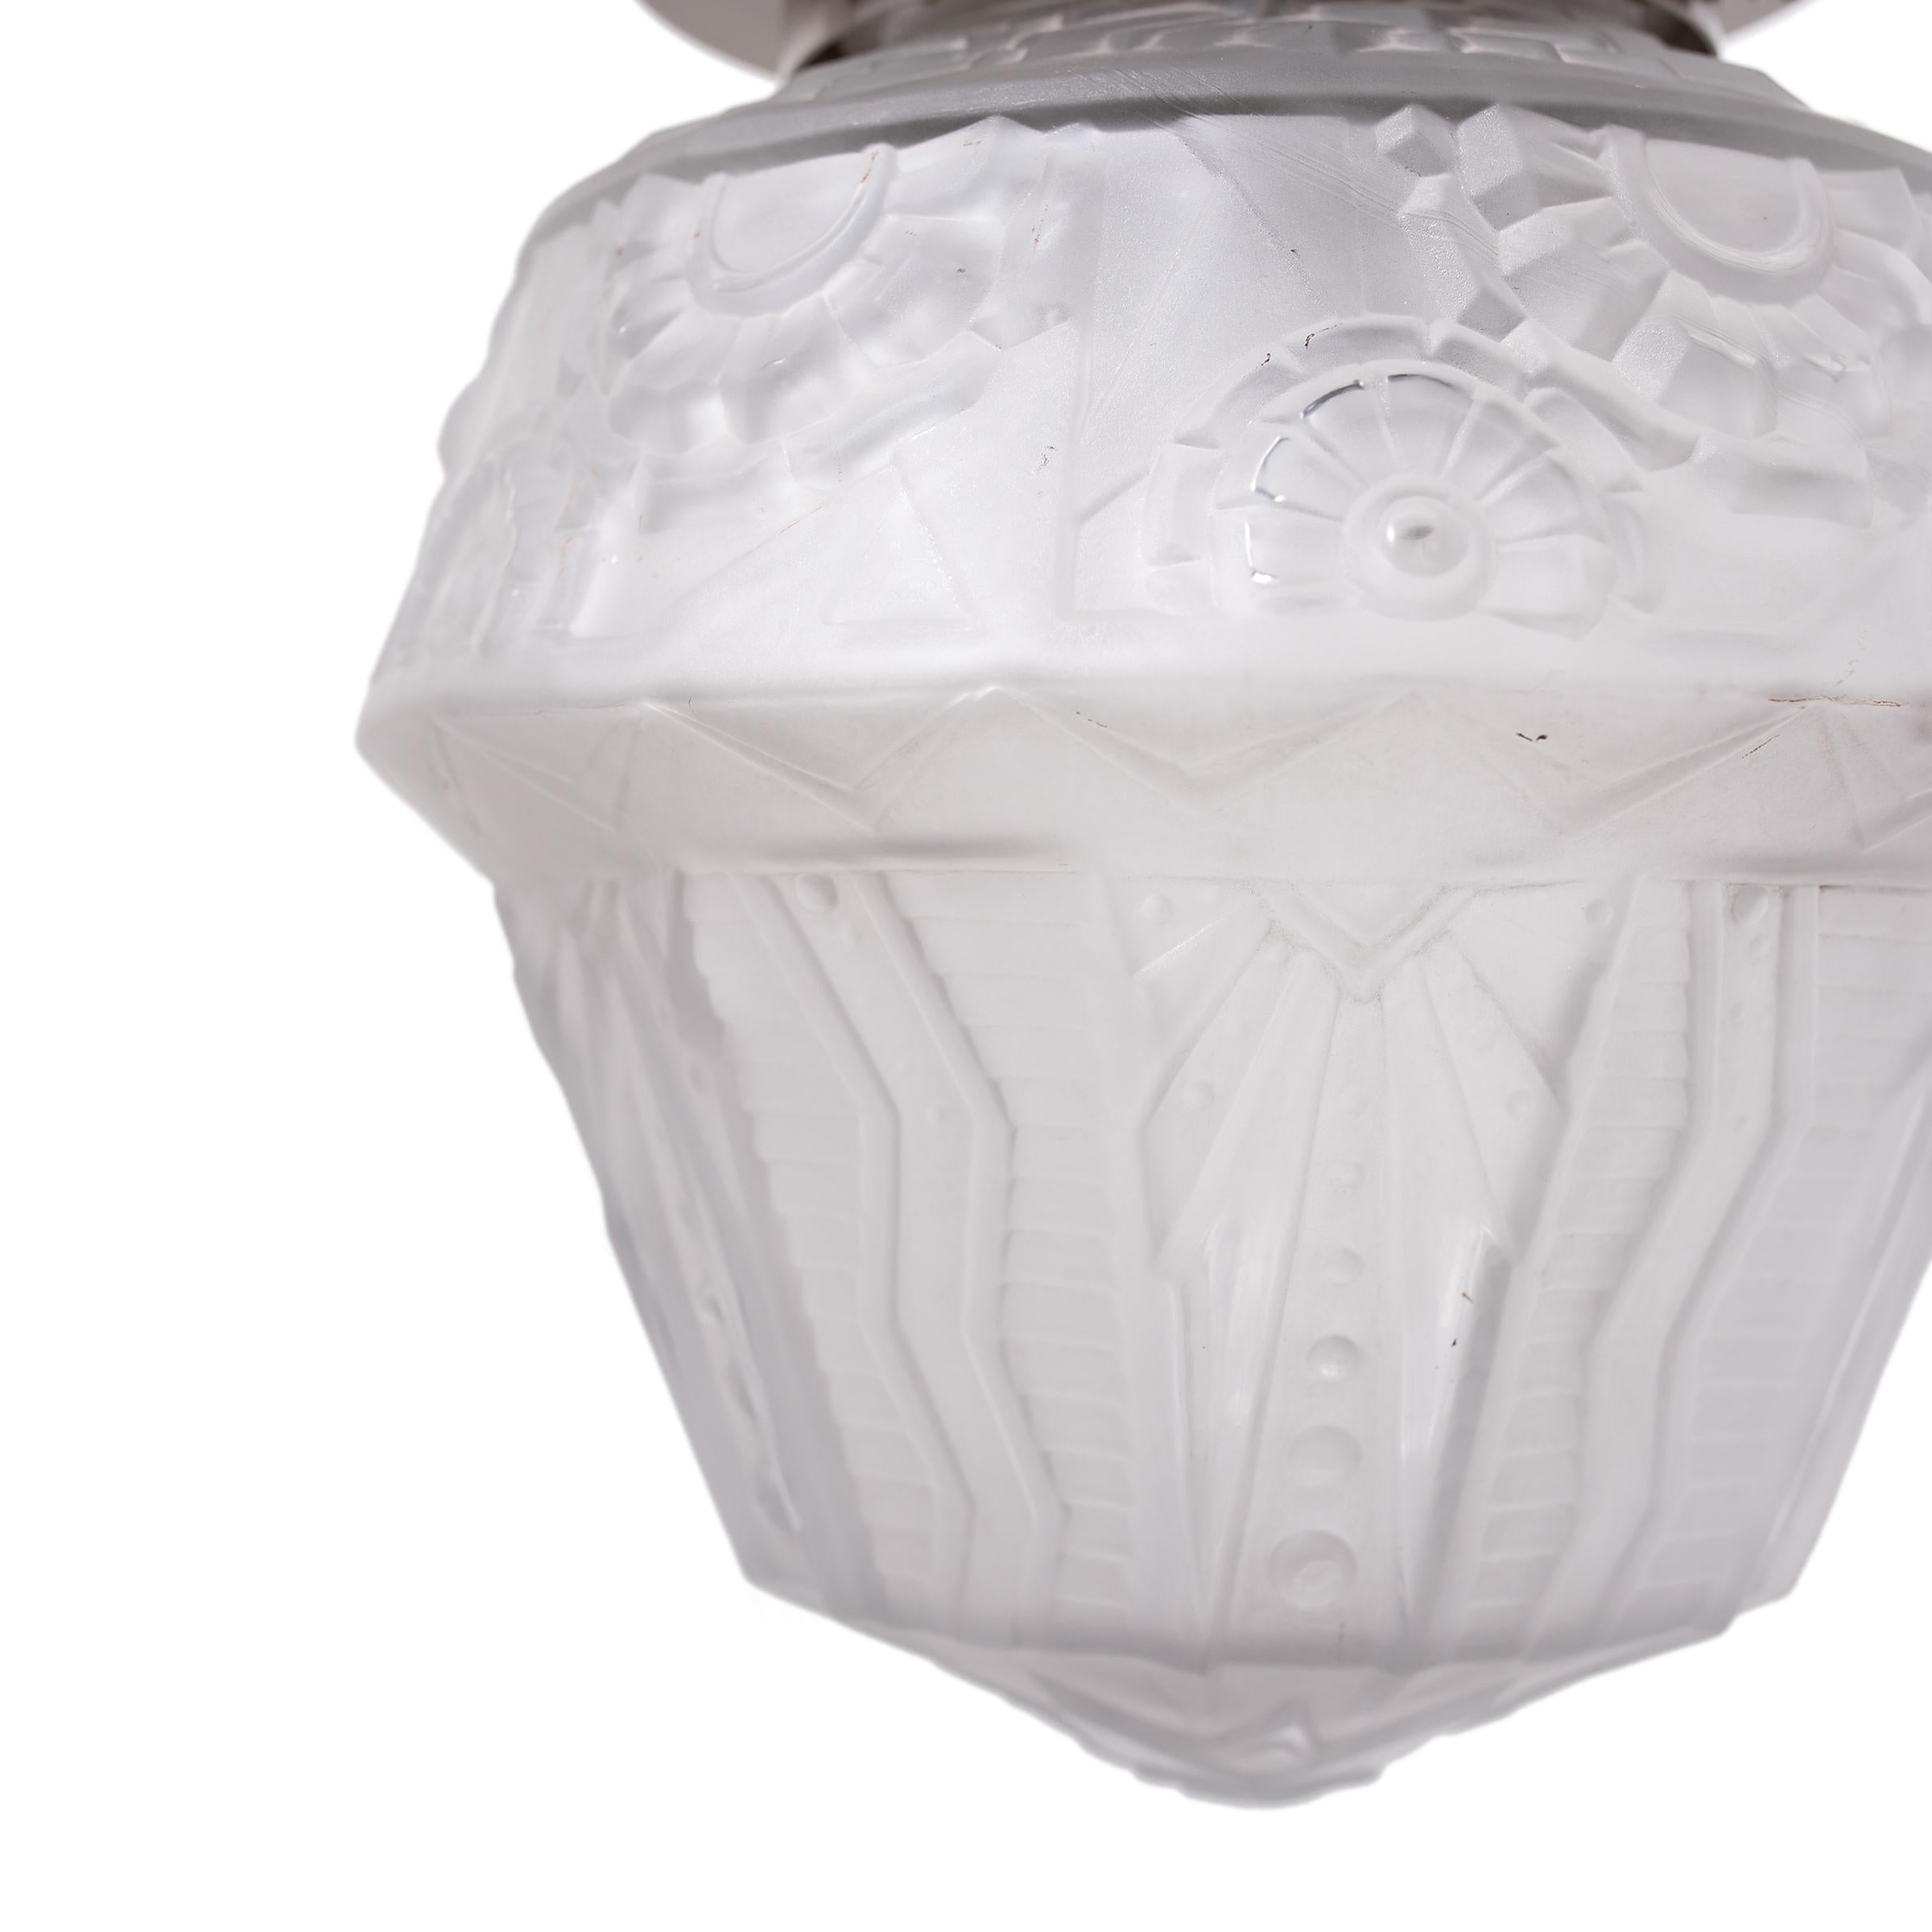 Ce luminaire encastré du début du XXe siècle illustre l'éclairage Art déco français avec sa forme sculpturale et son apparence douce et délicate. Le plafonnier est doté d'une simple monture ronde et d'un abat-jour en verre moulé dépoli, orné de